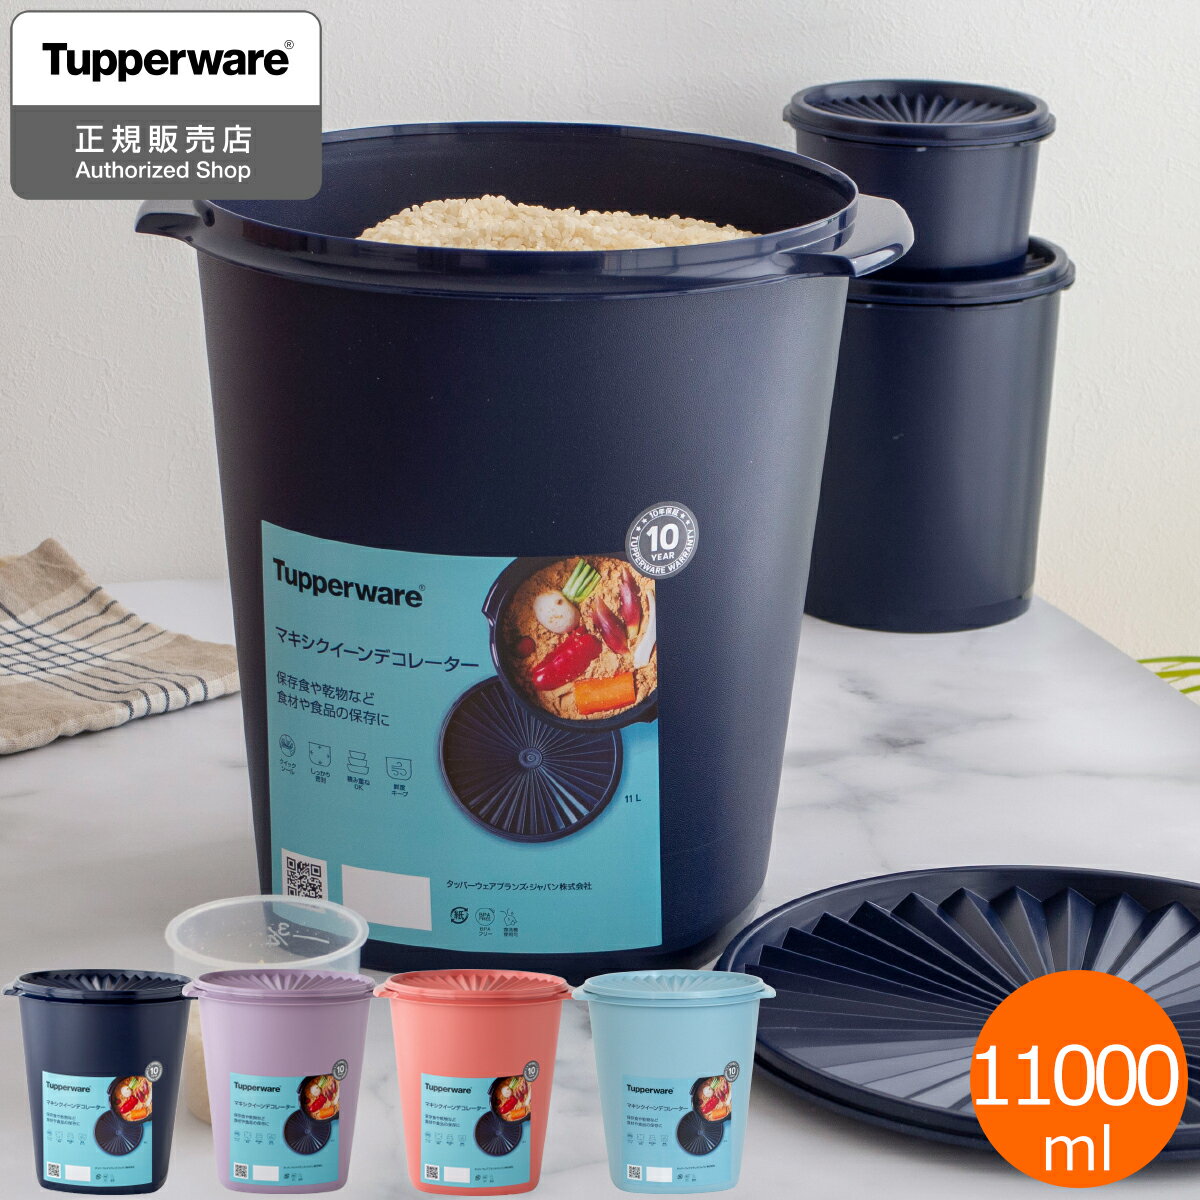 タッパーウェア Tupperware マキシクイーンデコレーター 11000ml 密封 密閉 保存容器 タッパー 食洗機対応 ストッカー 10年保証